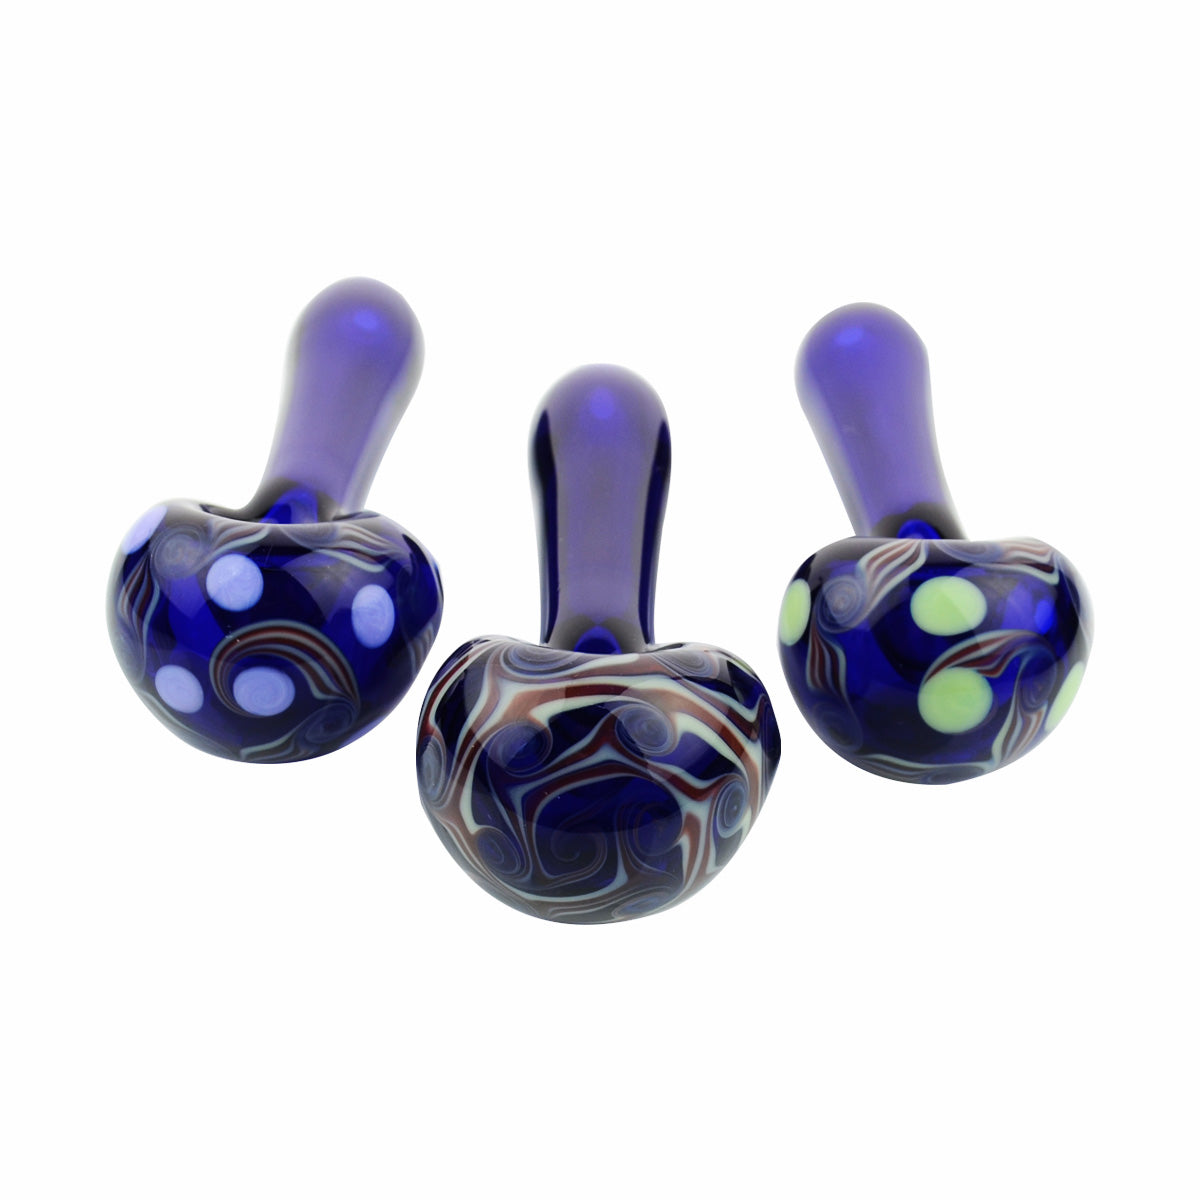 4.5'' American Blue Tube Hand PIPE Dot Fancy Art Head Spoon